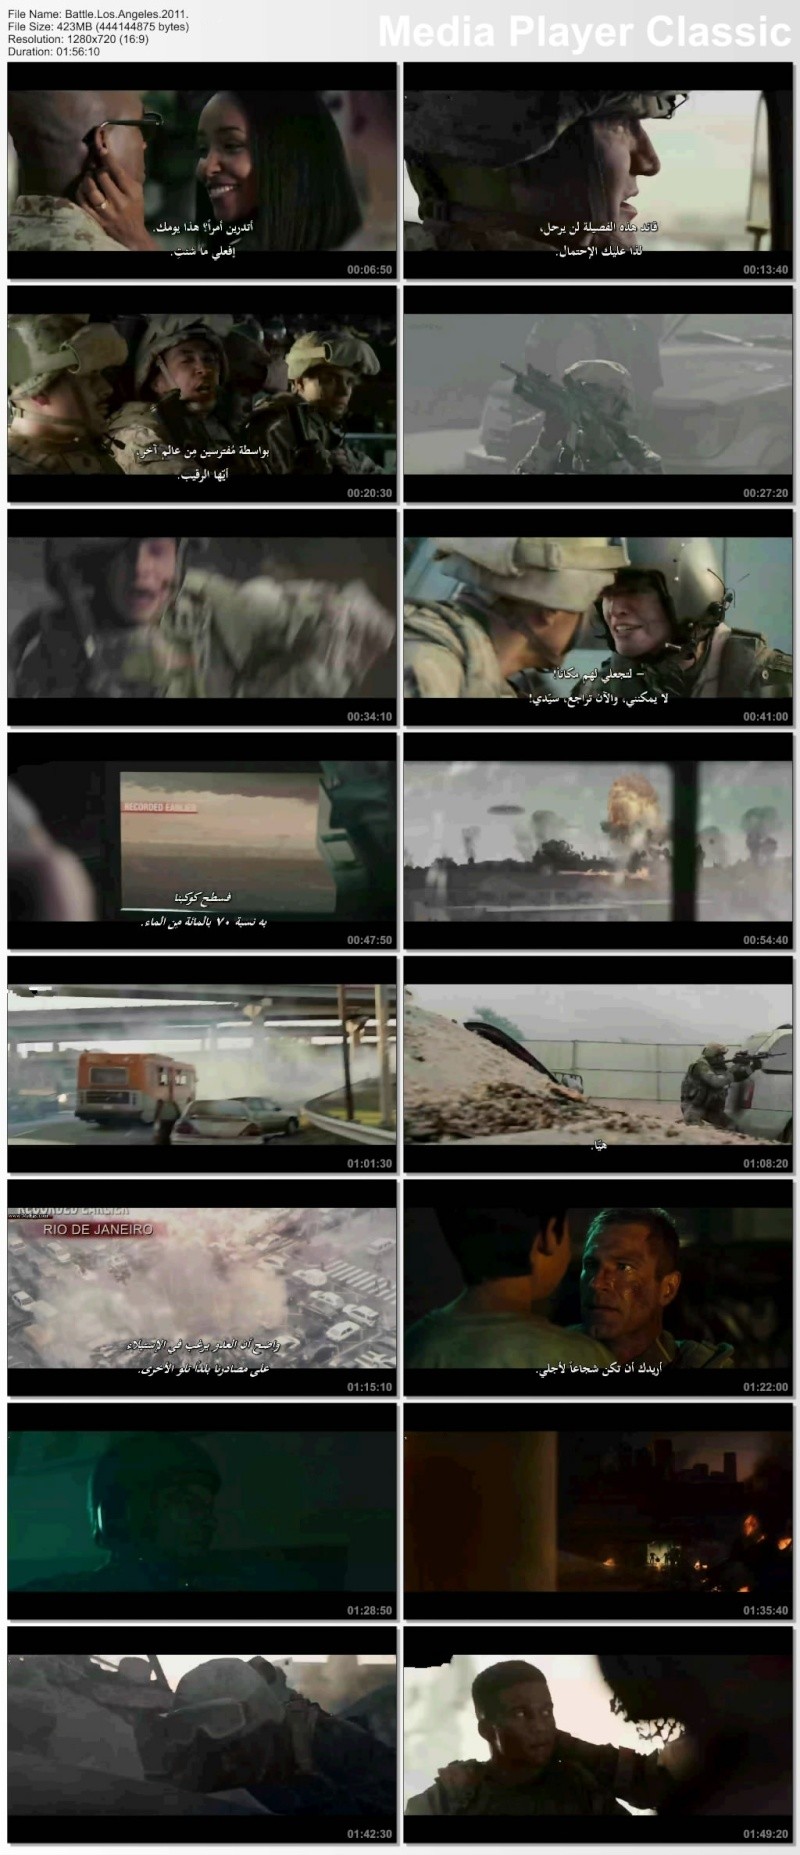 حصريا : النسخه BluRay 720p لفيلم الاكشن والخيال العلمى الرهيب Battle Los Angeles 2011 +النسخه MKV  44083712